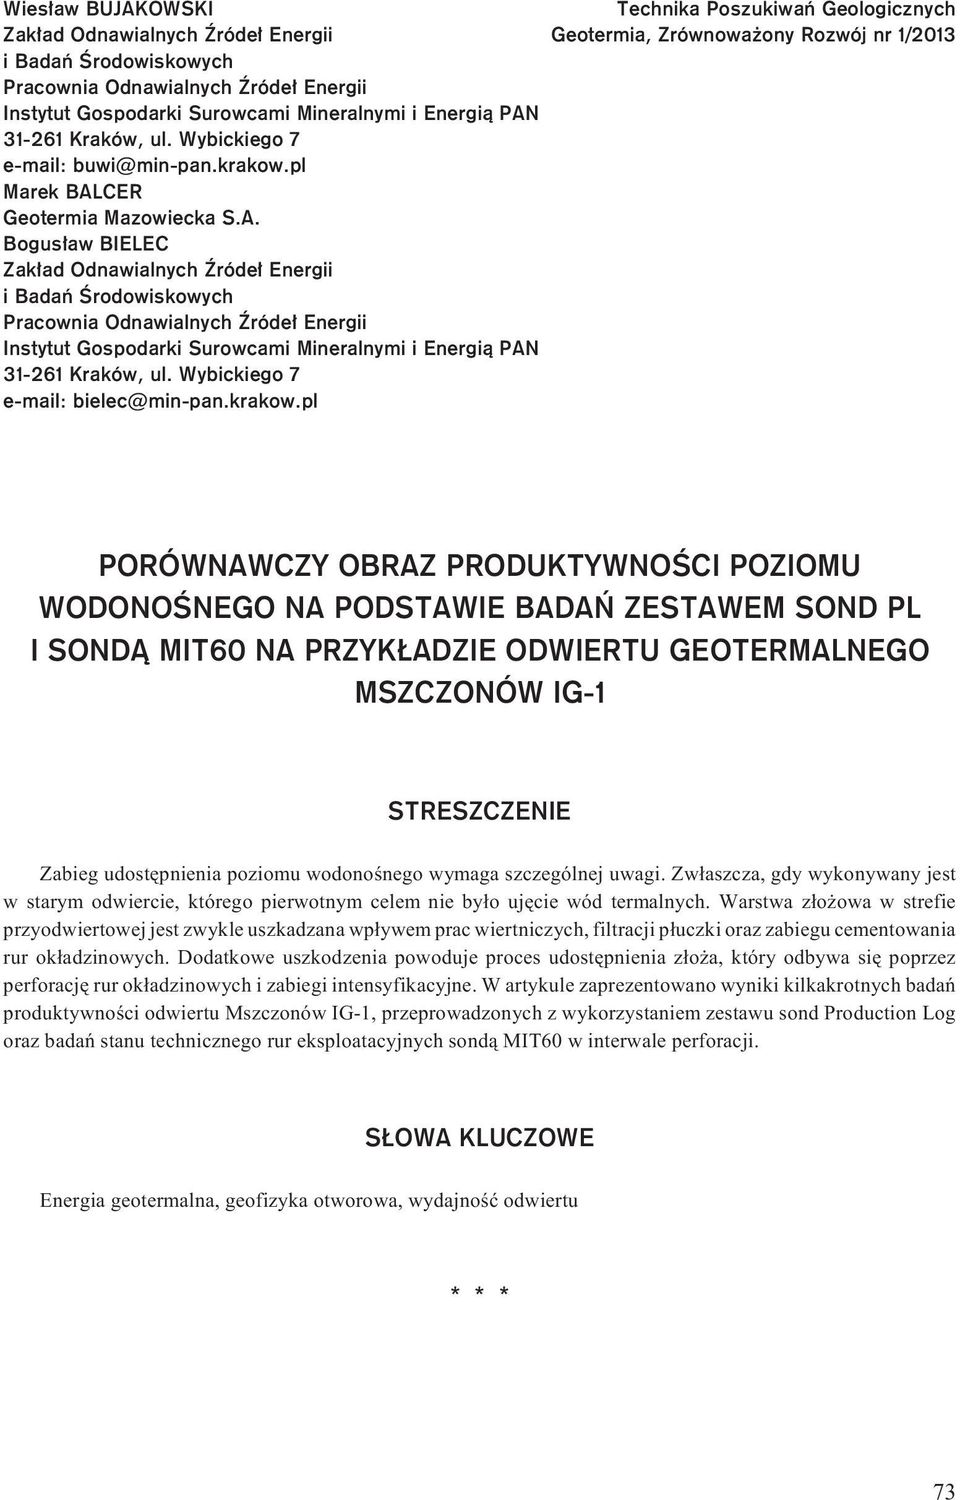 CER Geotermia Mazowiecka S.A.